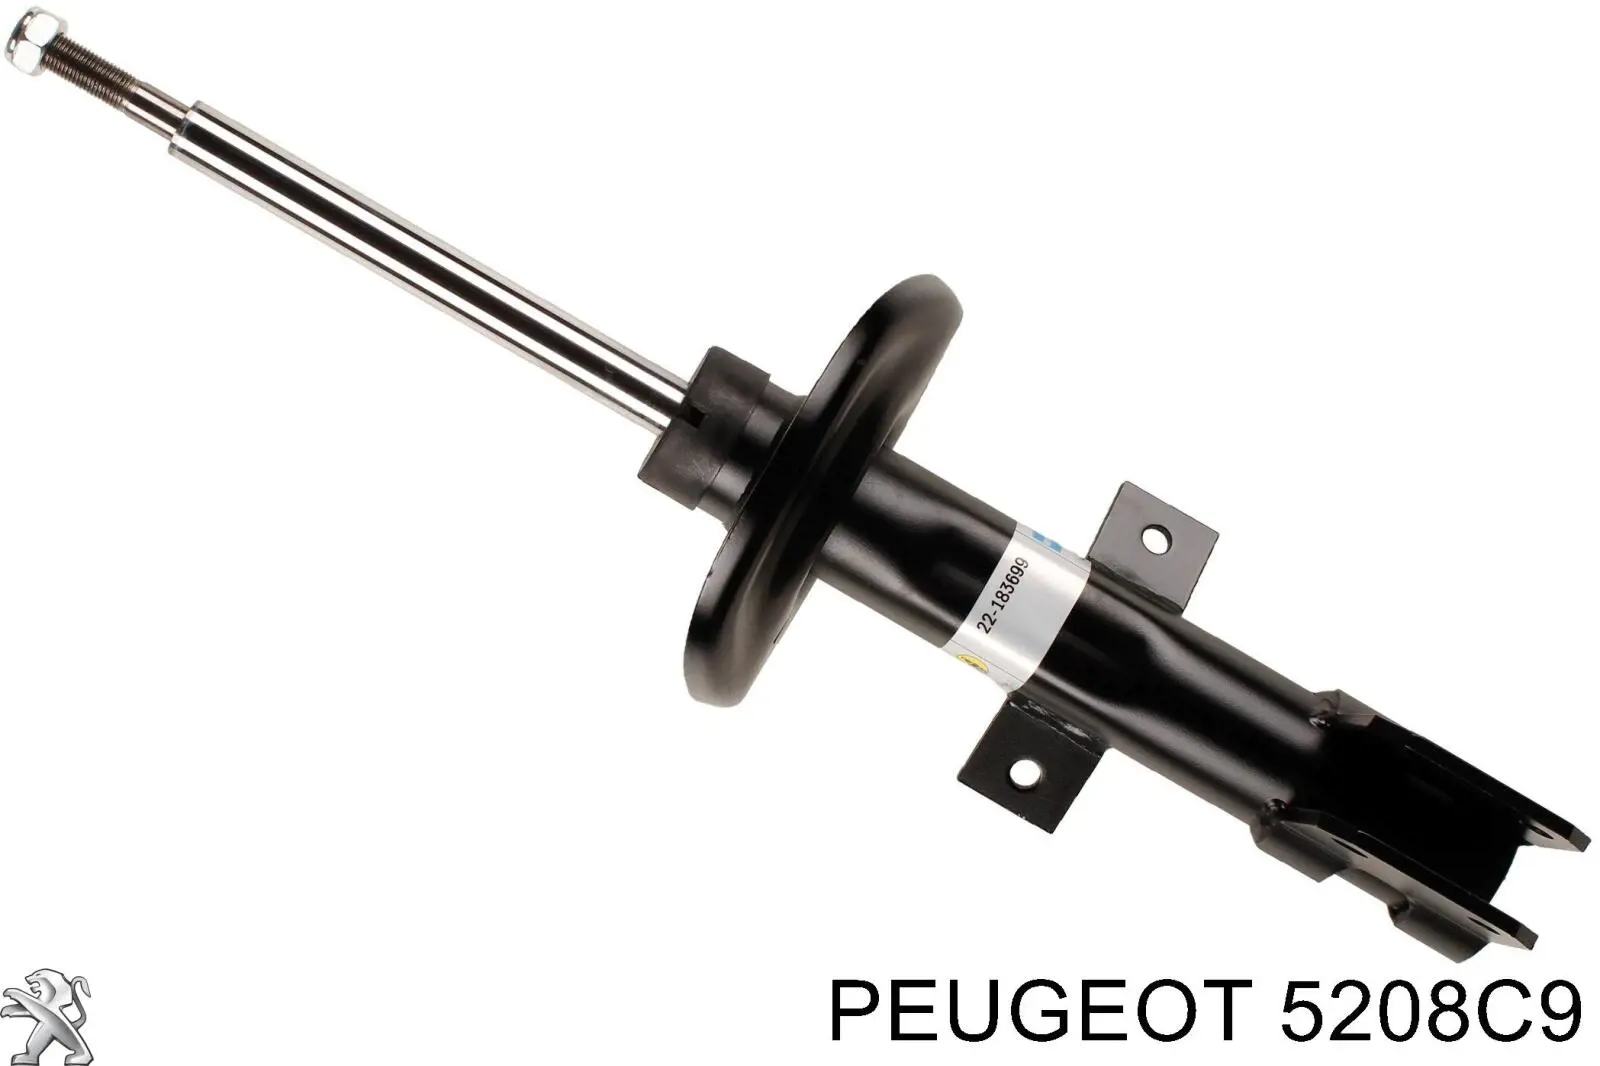 5208C9 Peugeot/Citroen amortiguador delantero derecho